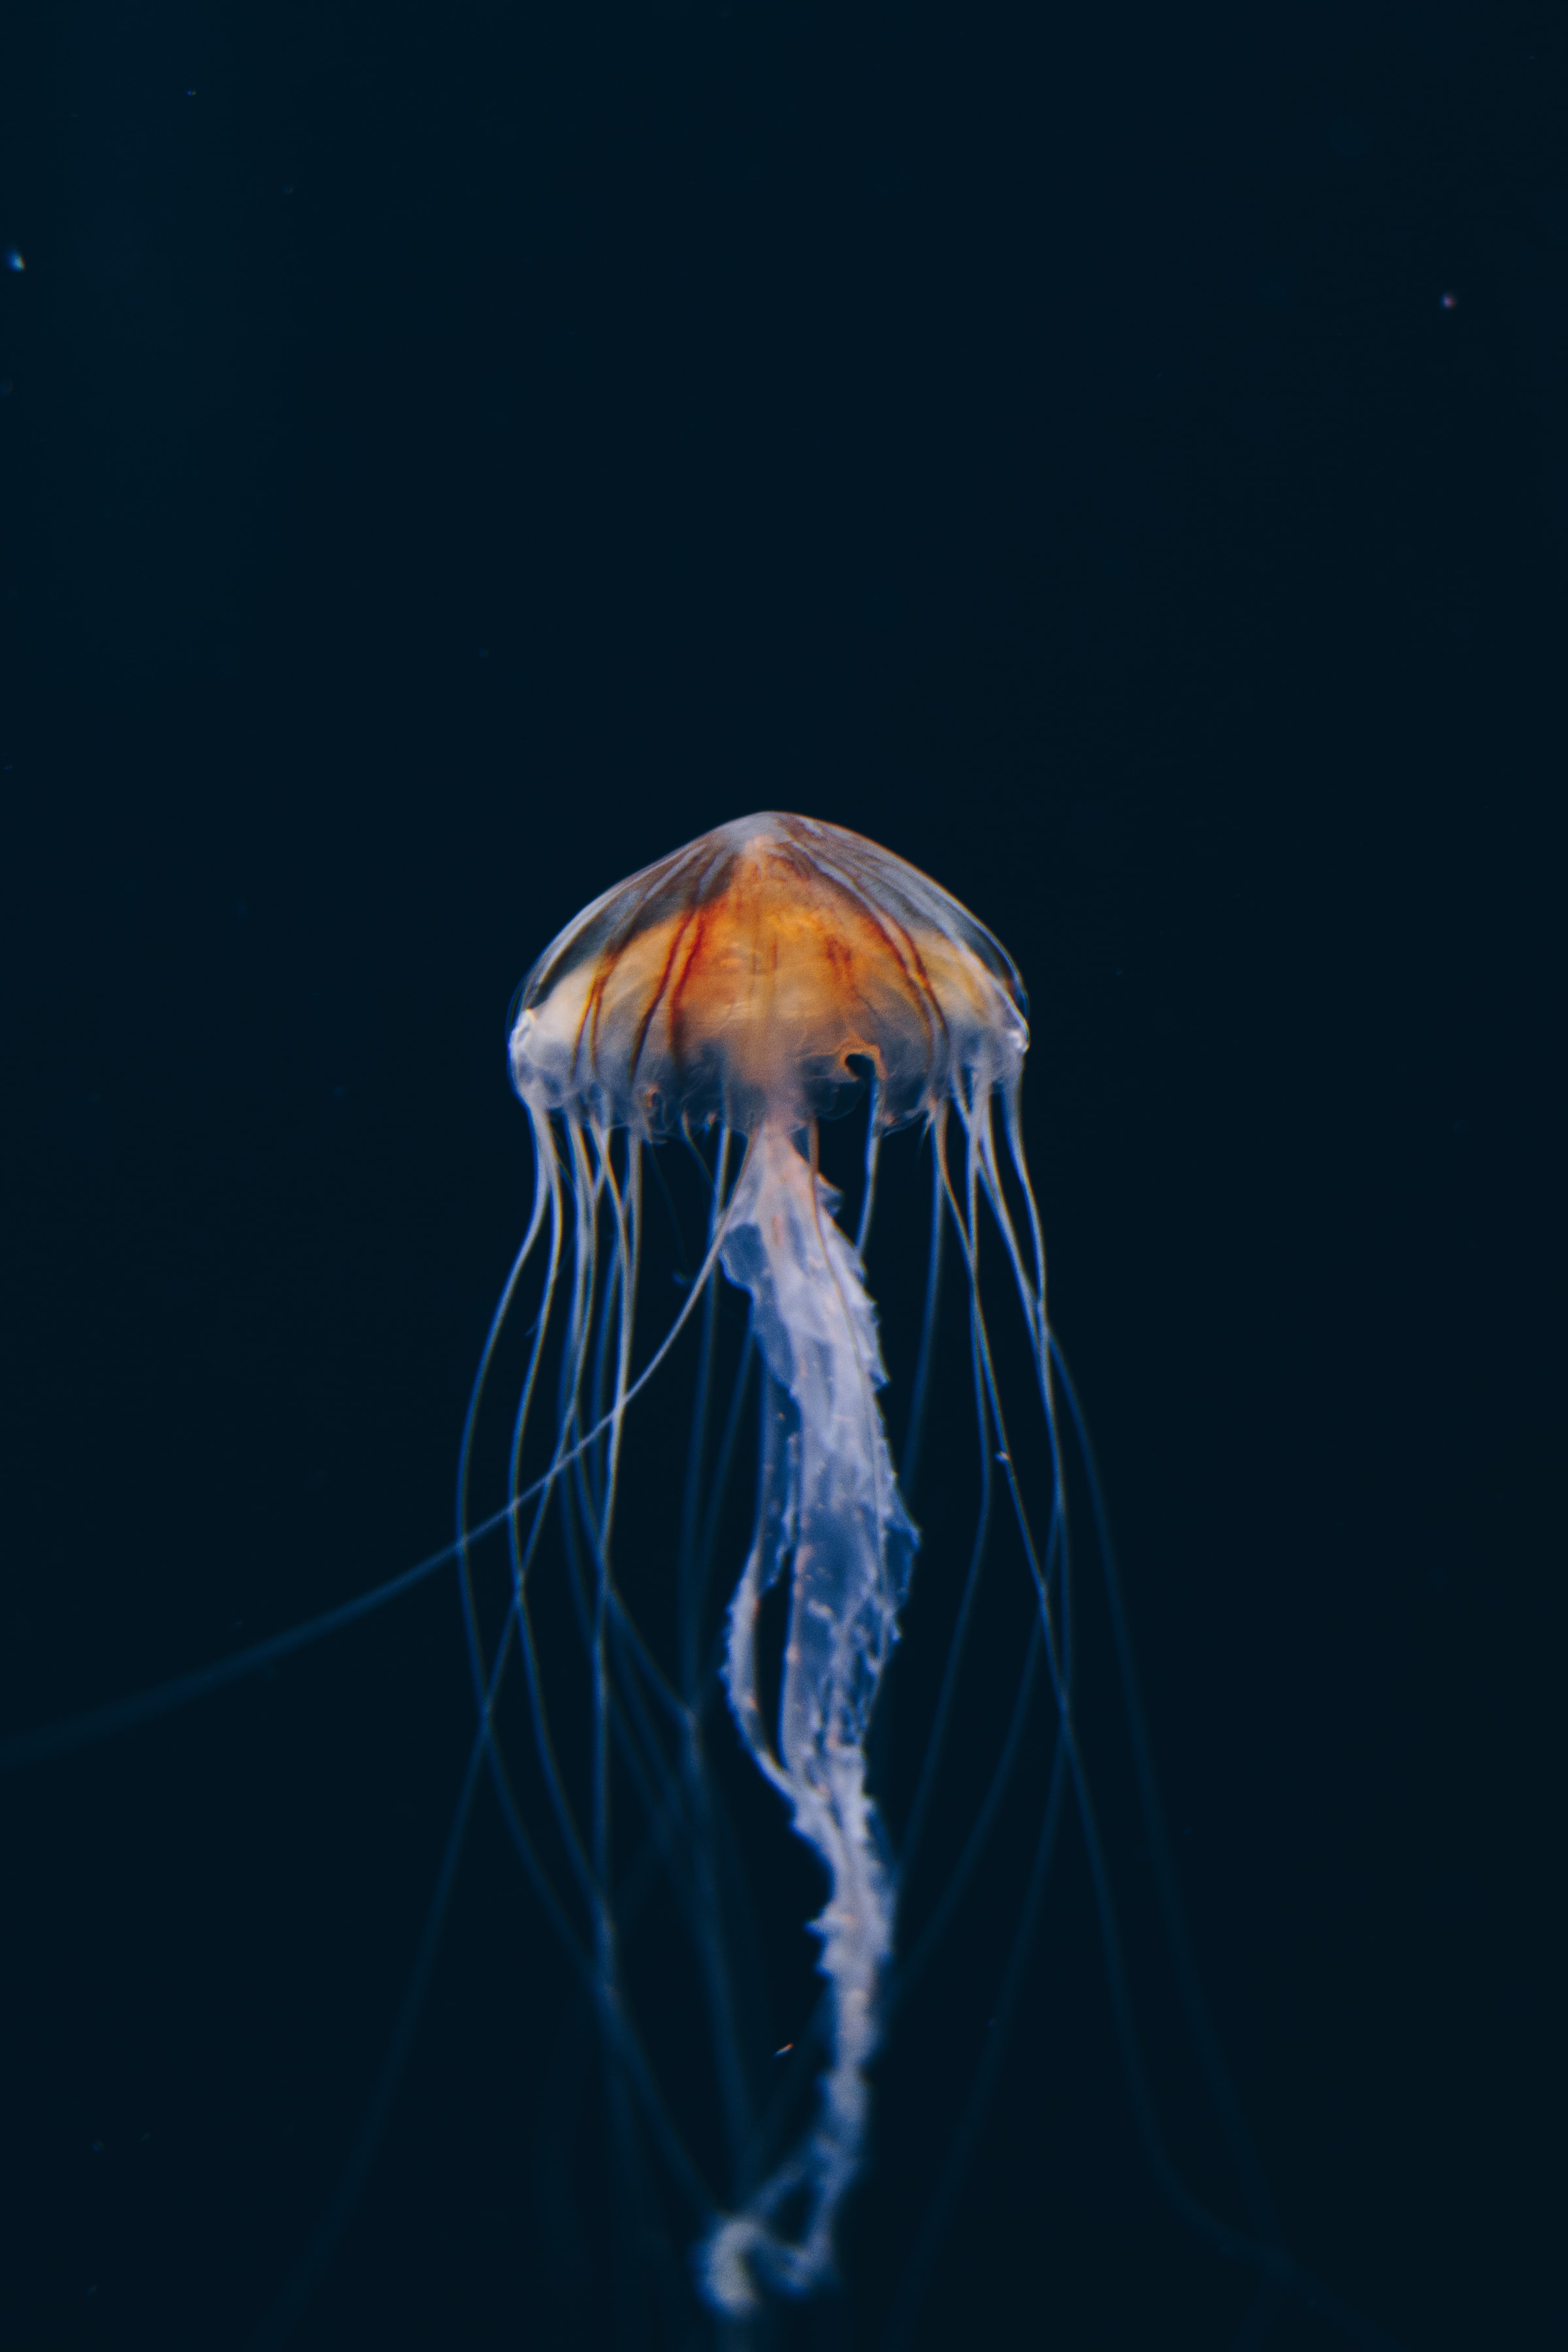 jellyfish, nature, water, dark, beautiful, underwater world wallpaper for mobile